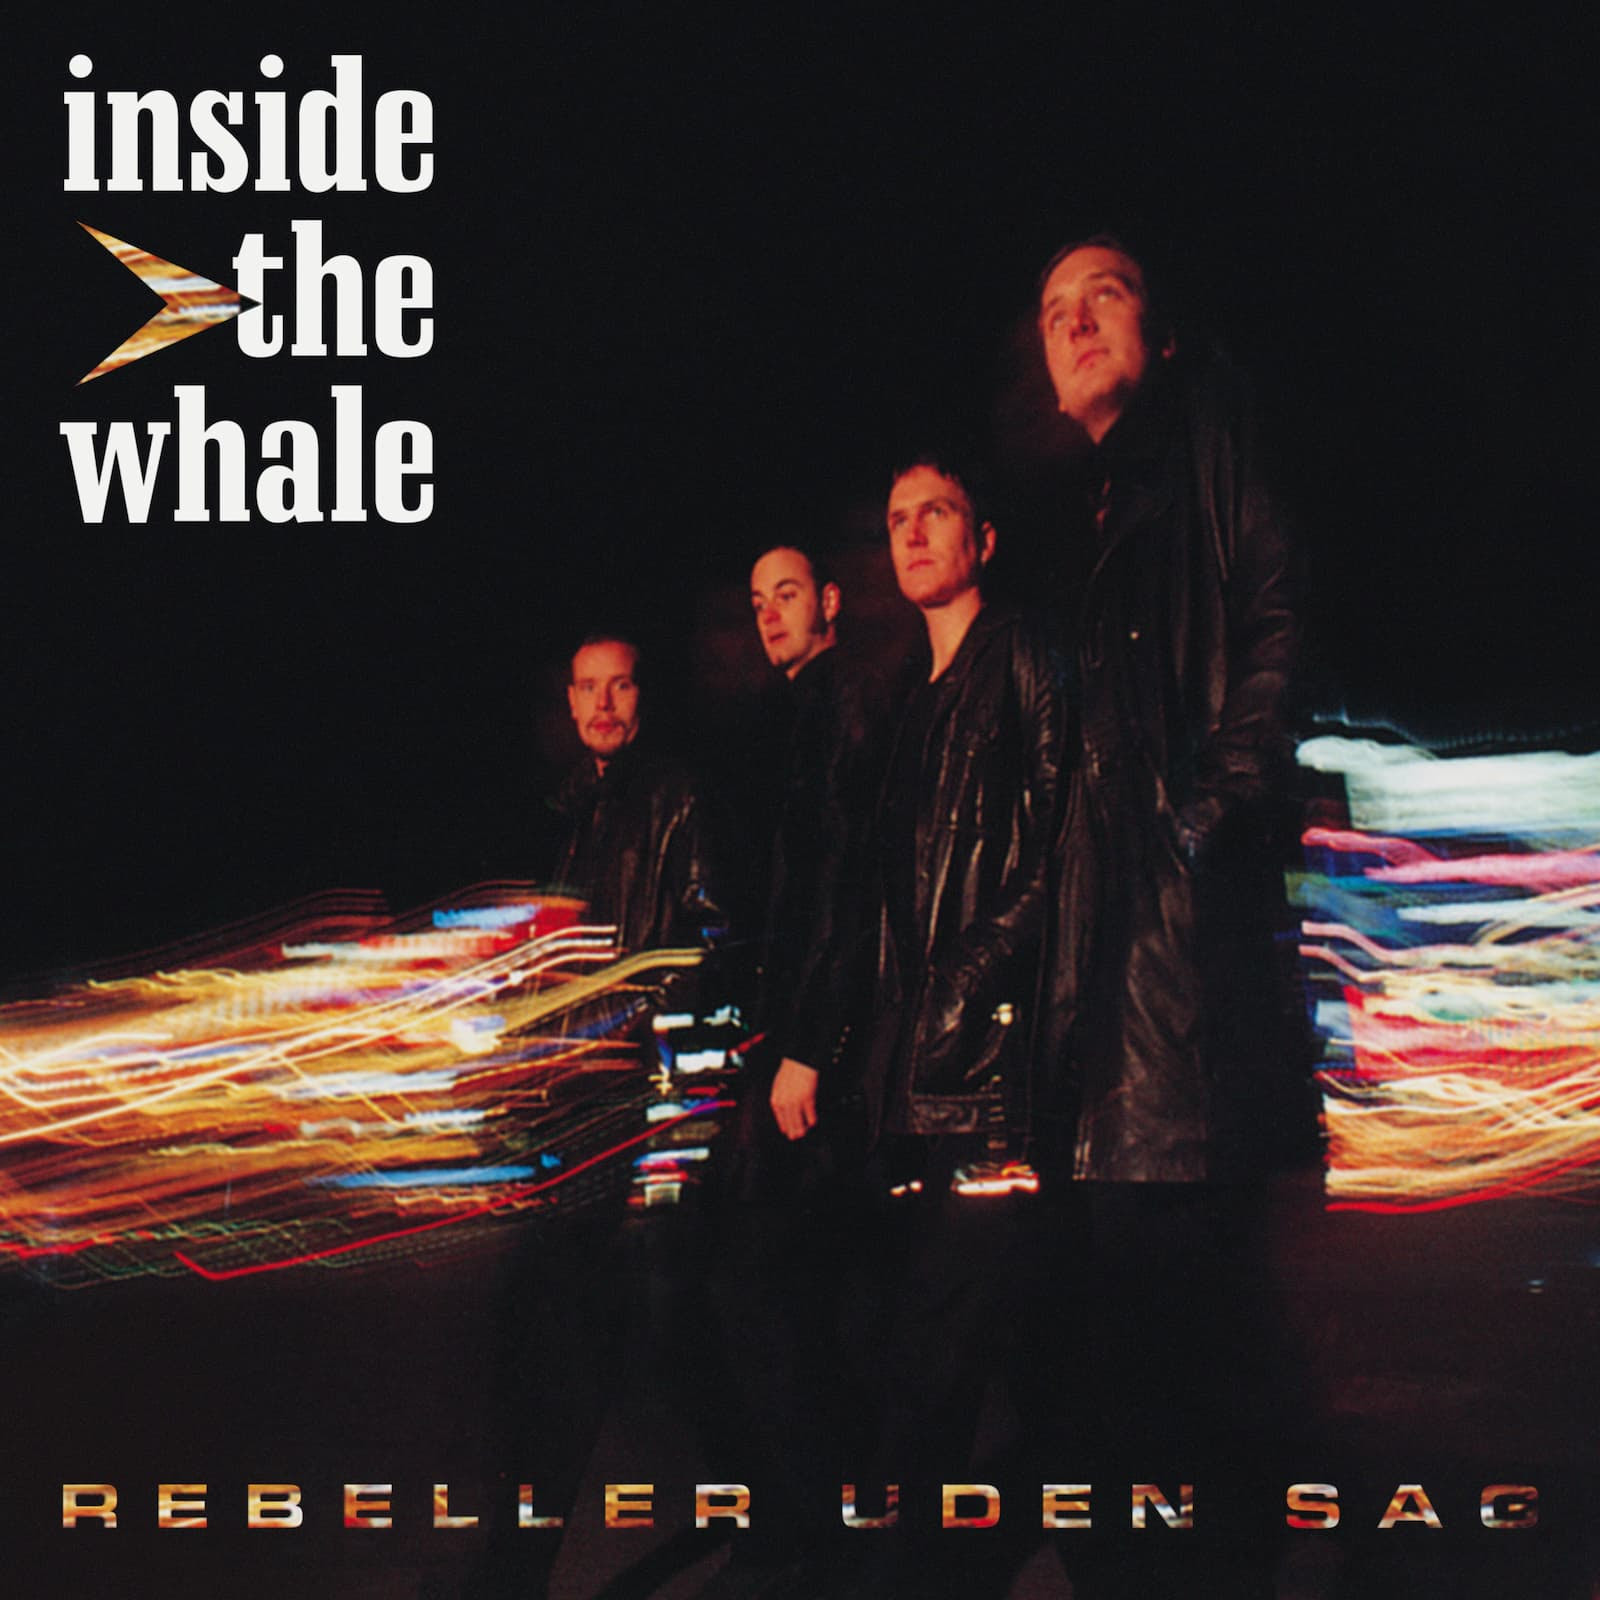 Inside the whale rebeller uden sag vinyl lp